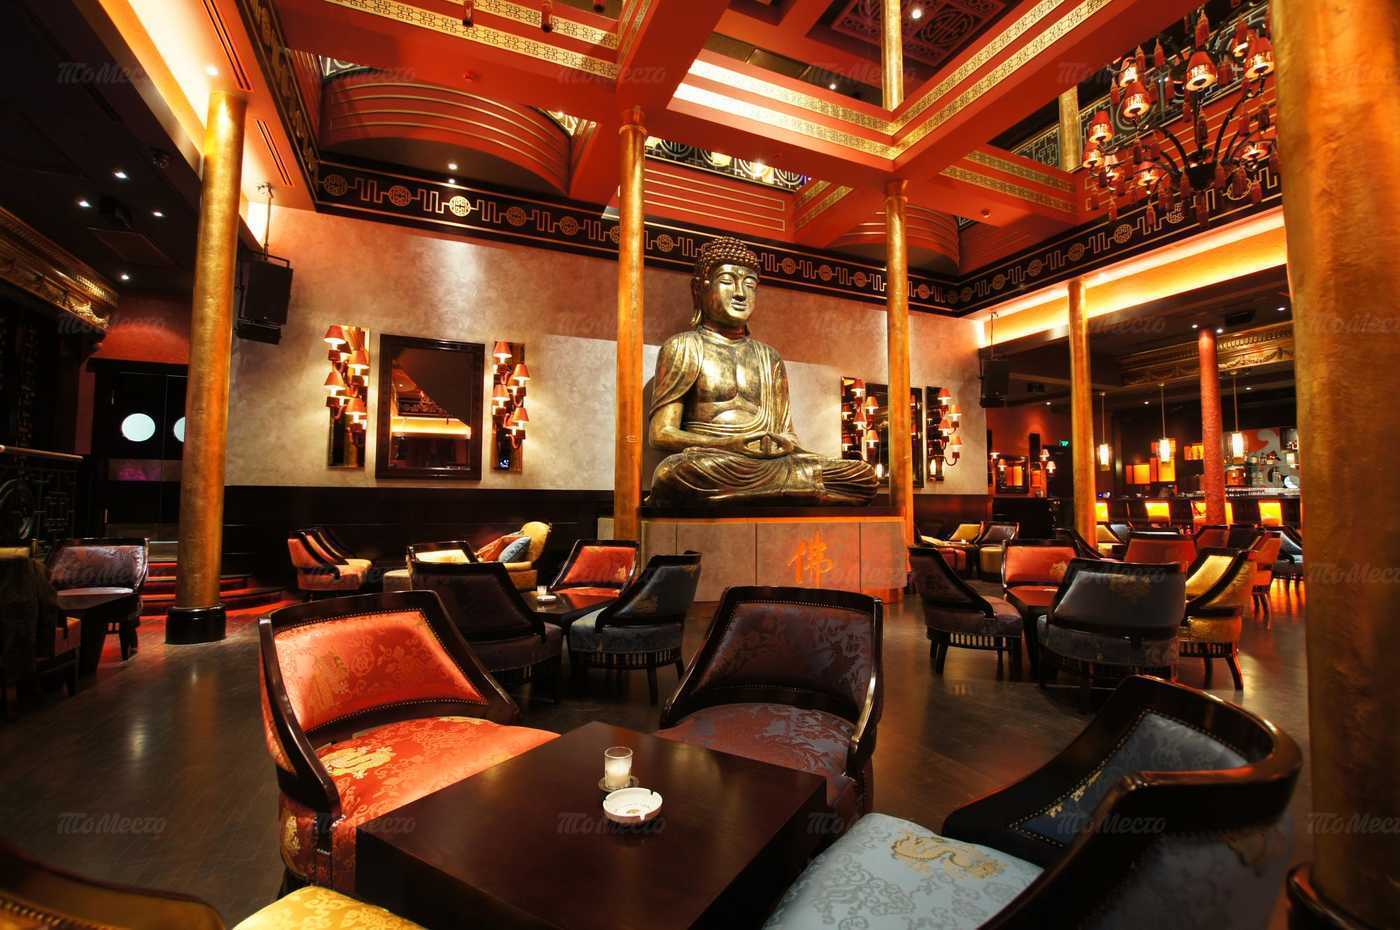 Buddha-bar в санкт-петербурге: лаунж-ресторан мировой сети с уникальным деревянным интерьером